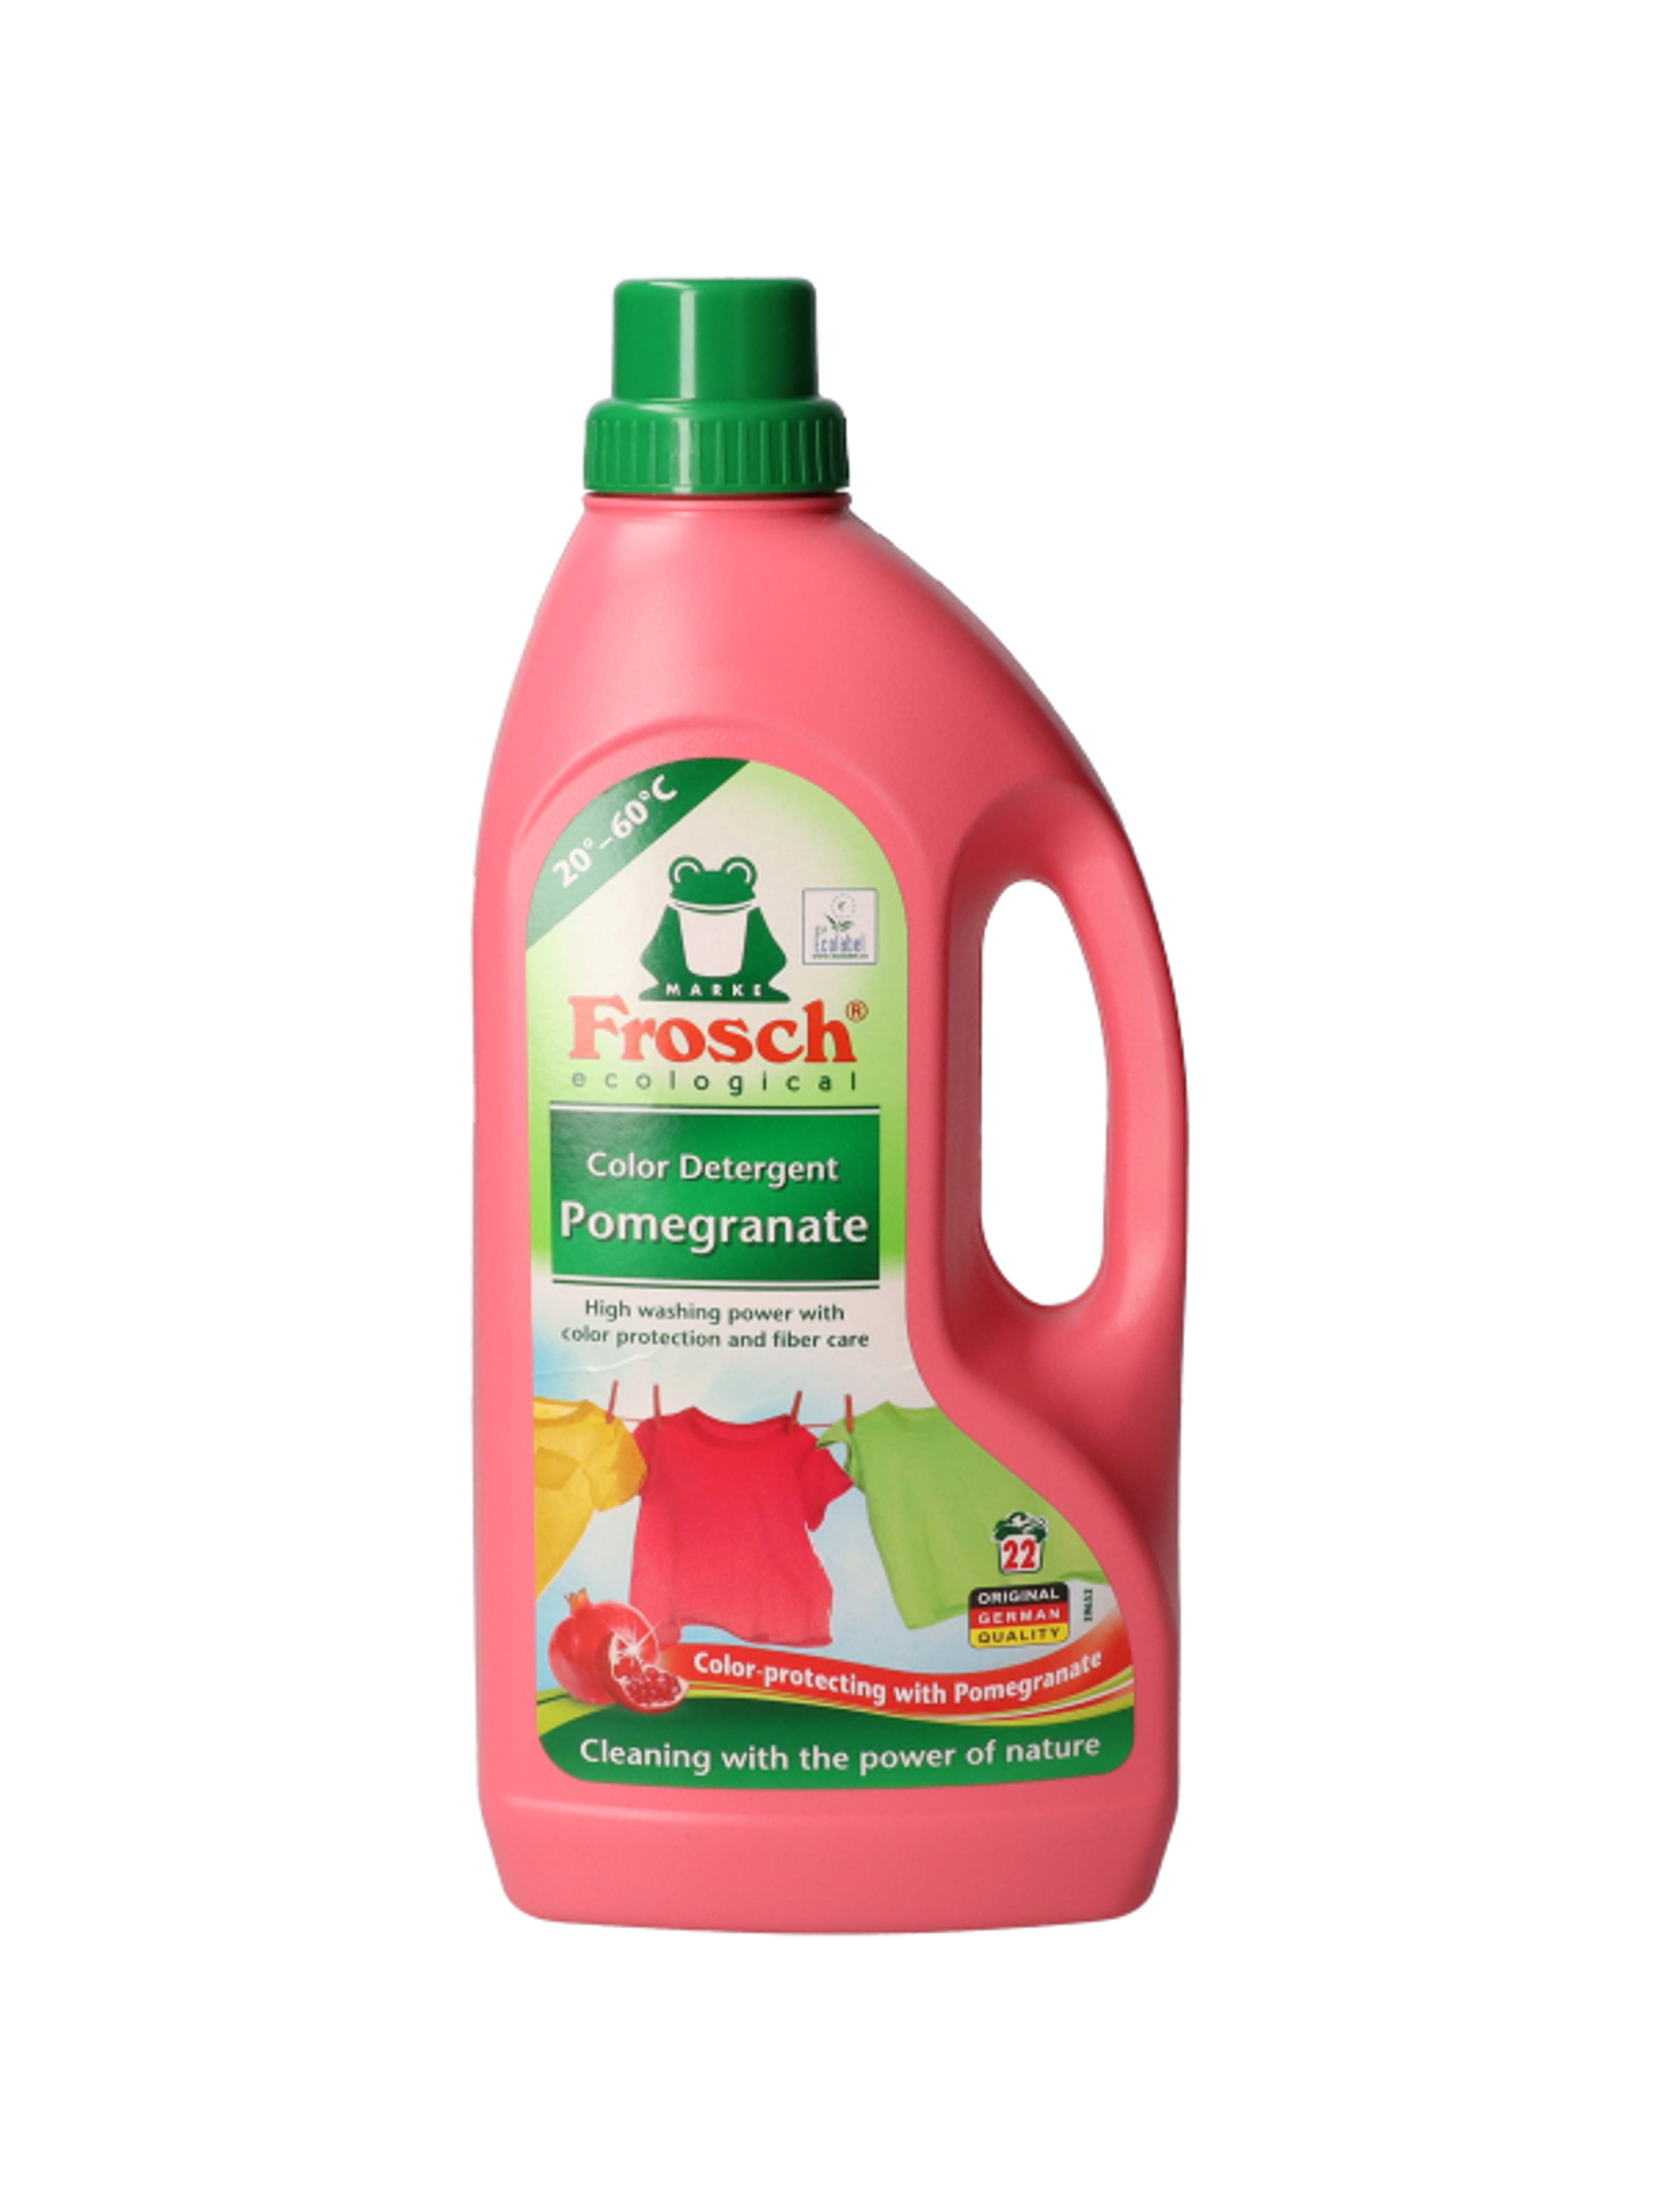 Frosch folyékony mosószer gránátalma kivonattal 22 mosás -1500 ml